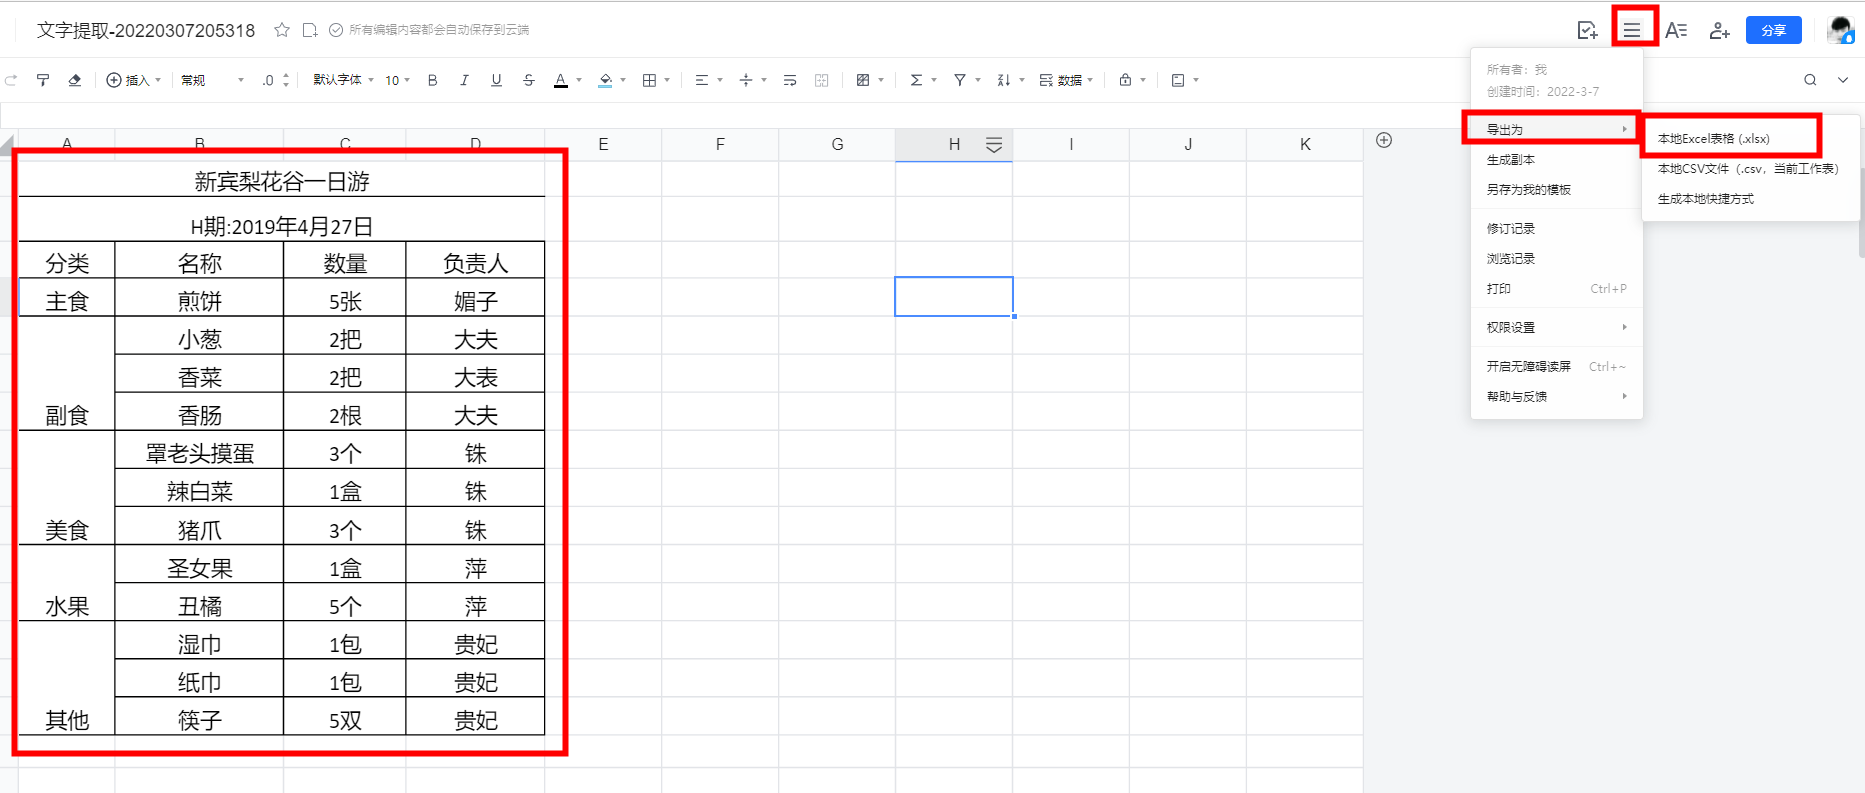 将图片转为Excel表格居然这么简单？白用QQ这么多年了